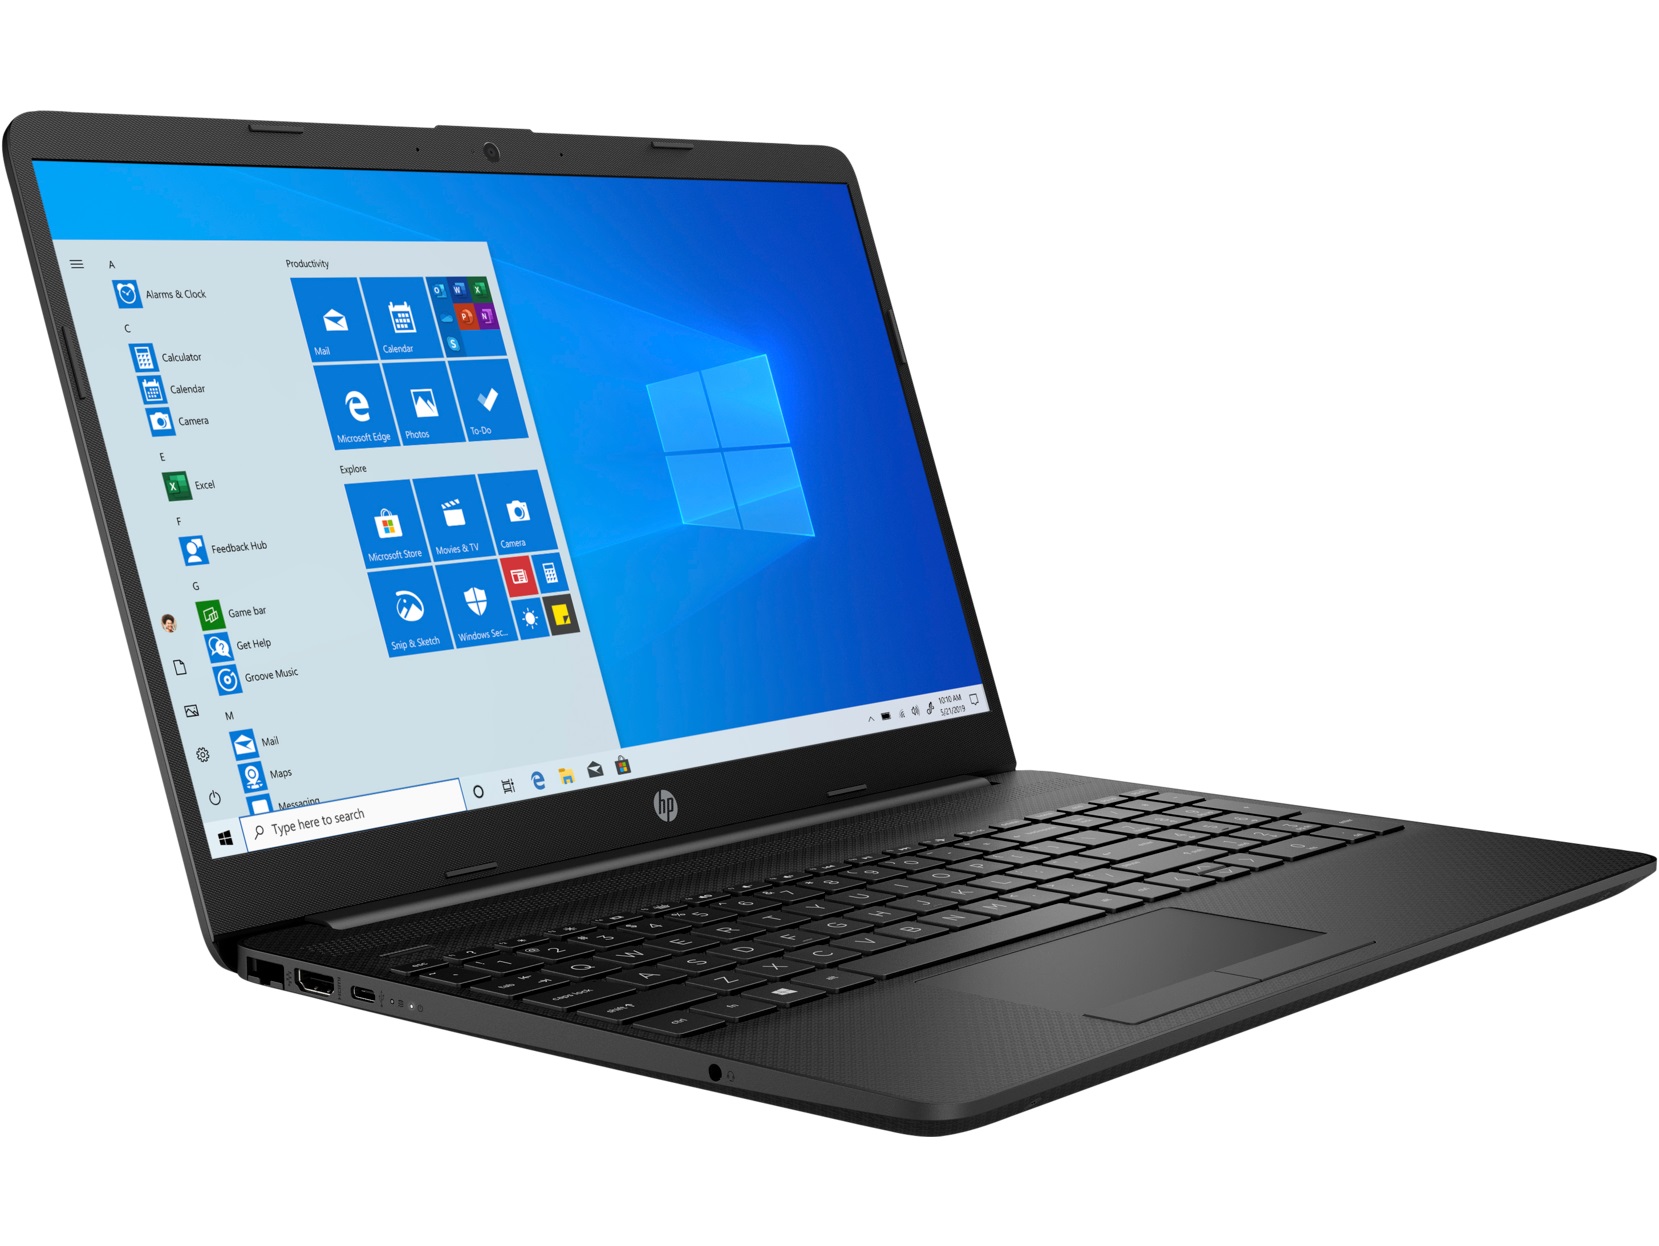 Laptop HP 15-DW1001 Intel Celeron N4020, 4GB, 128GB SSD, 15.6'FHD, Win 10 / Nhập khẩu chính hãng